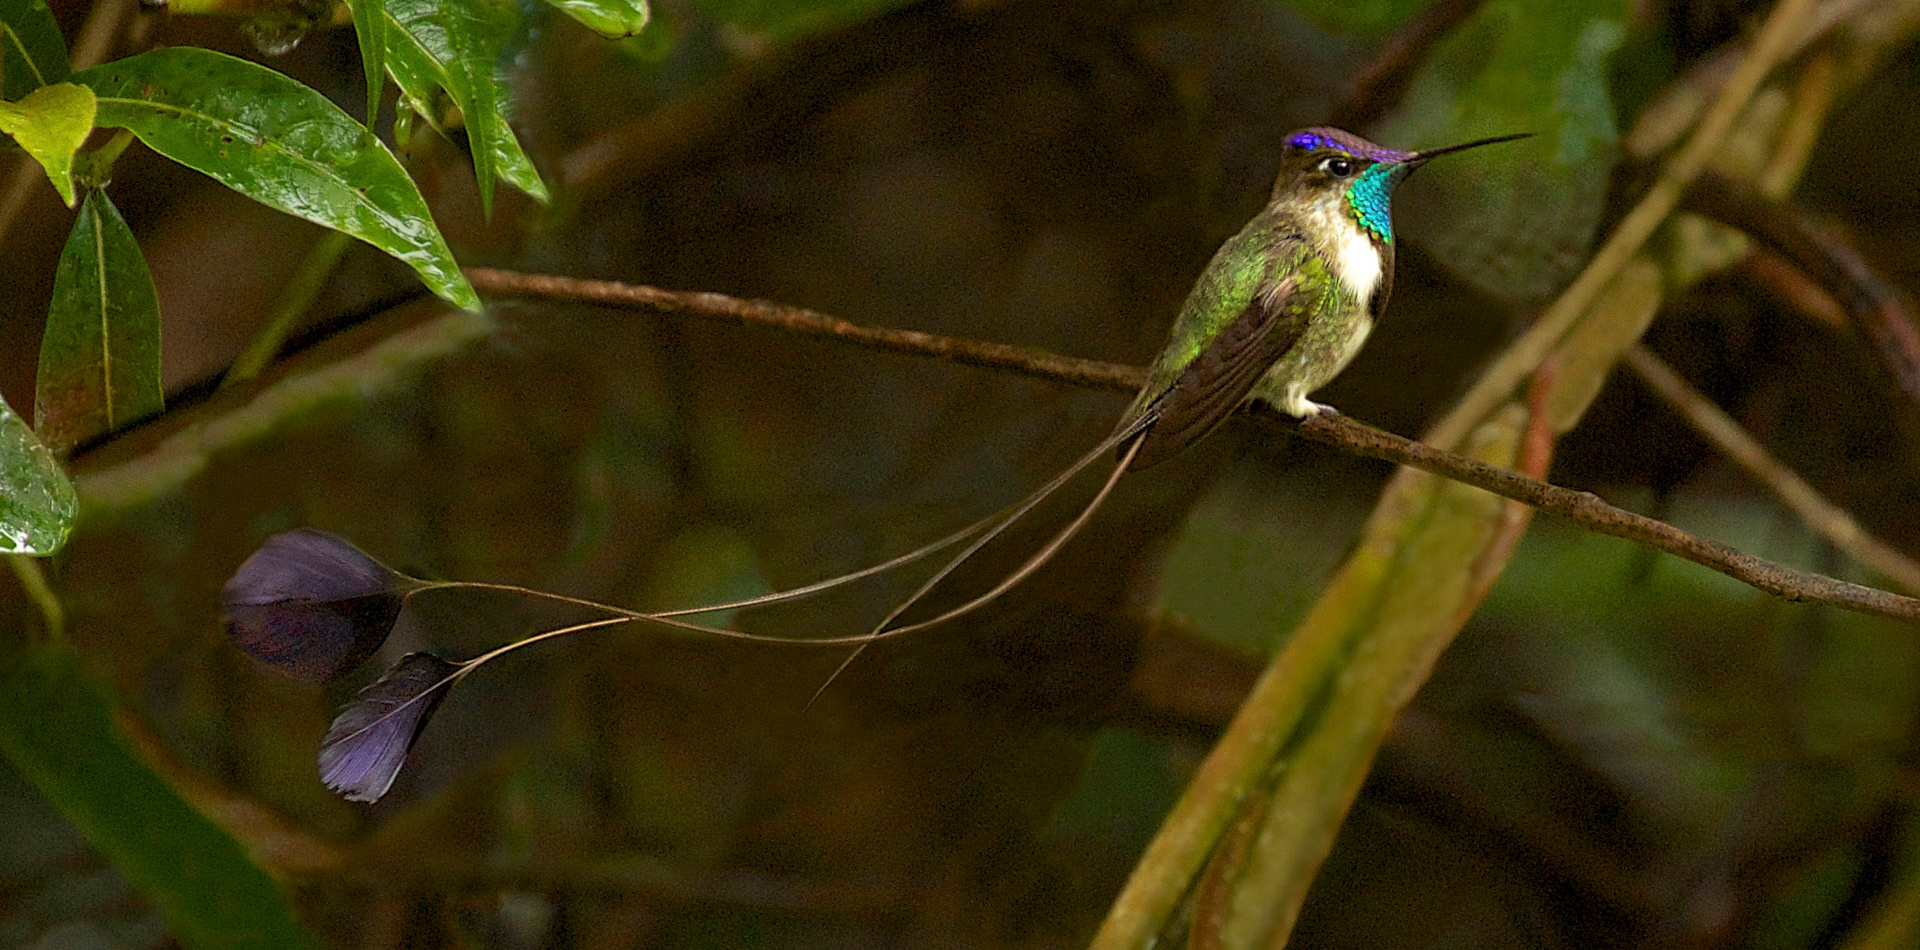 Spatuletail Hummingbird